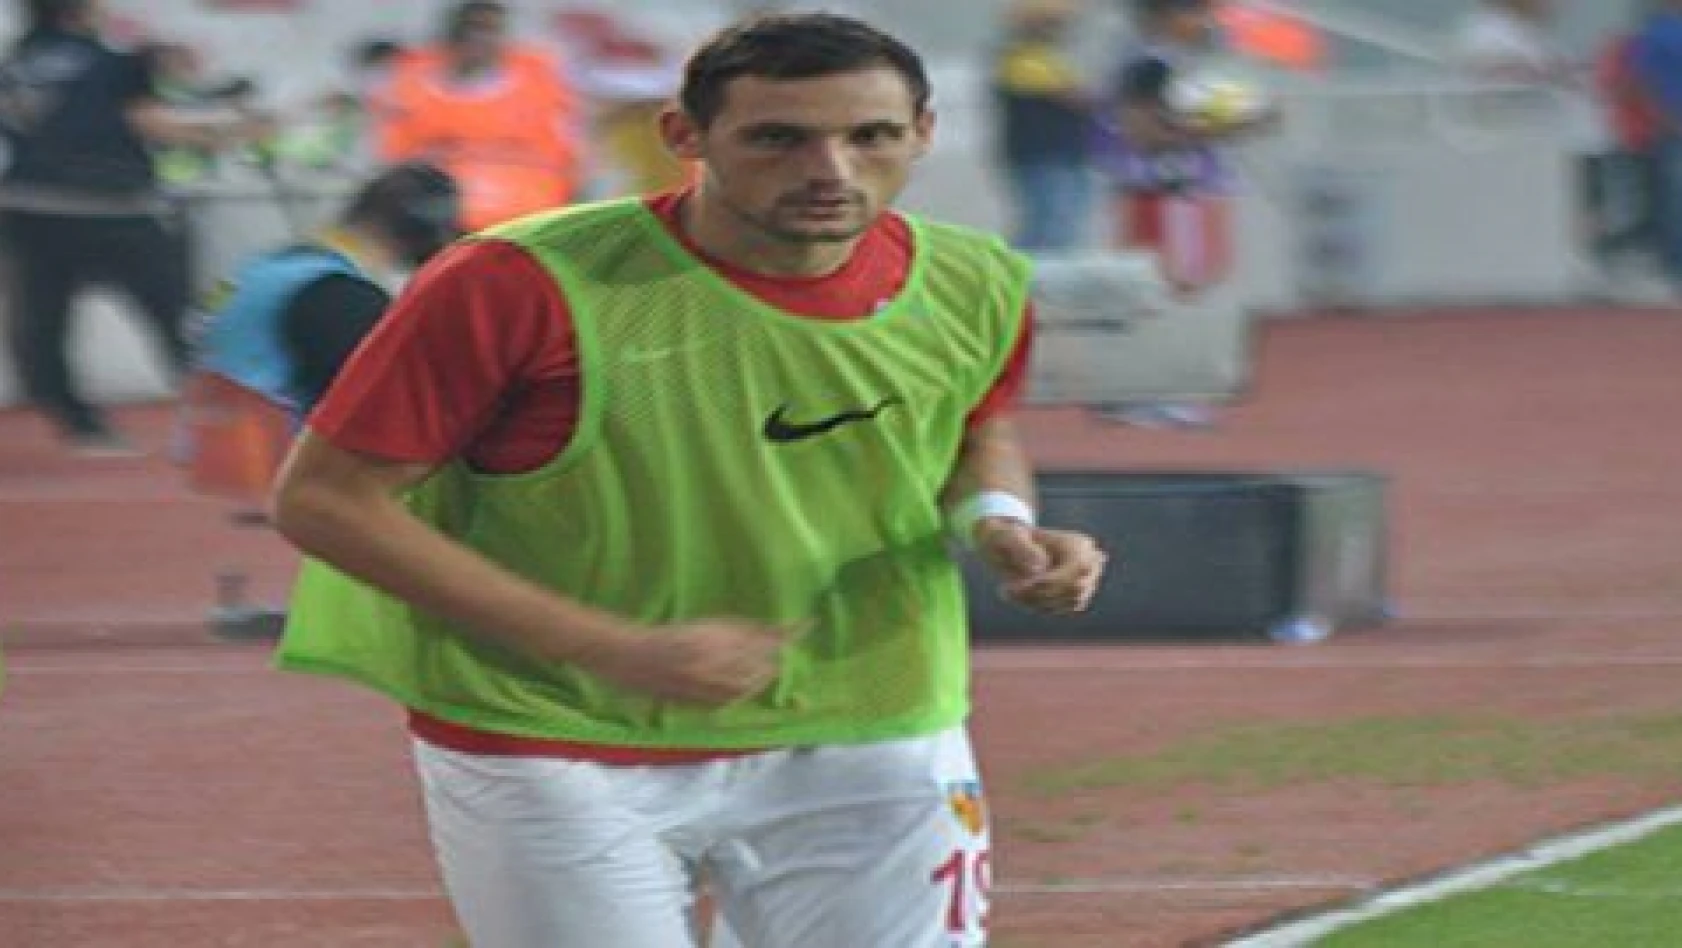 Nikola Stojiljkovic'in golü bulması 2 dakika sürdü 